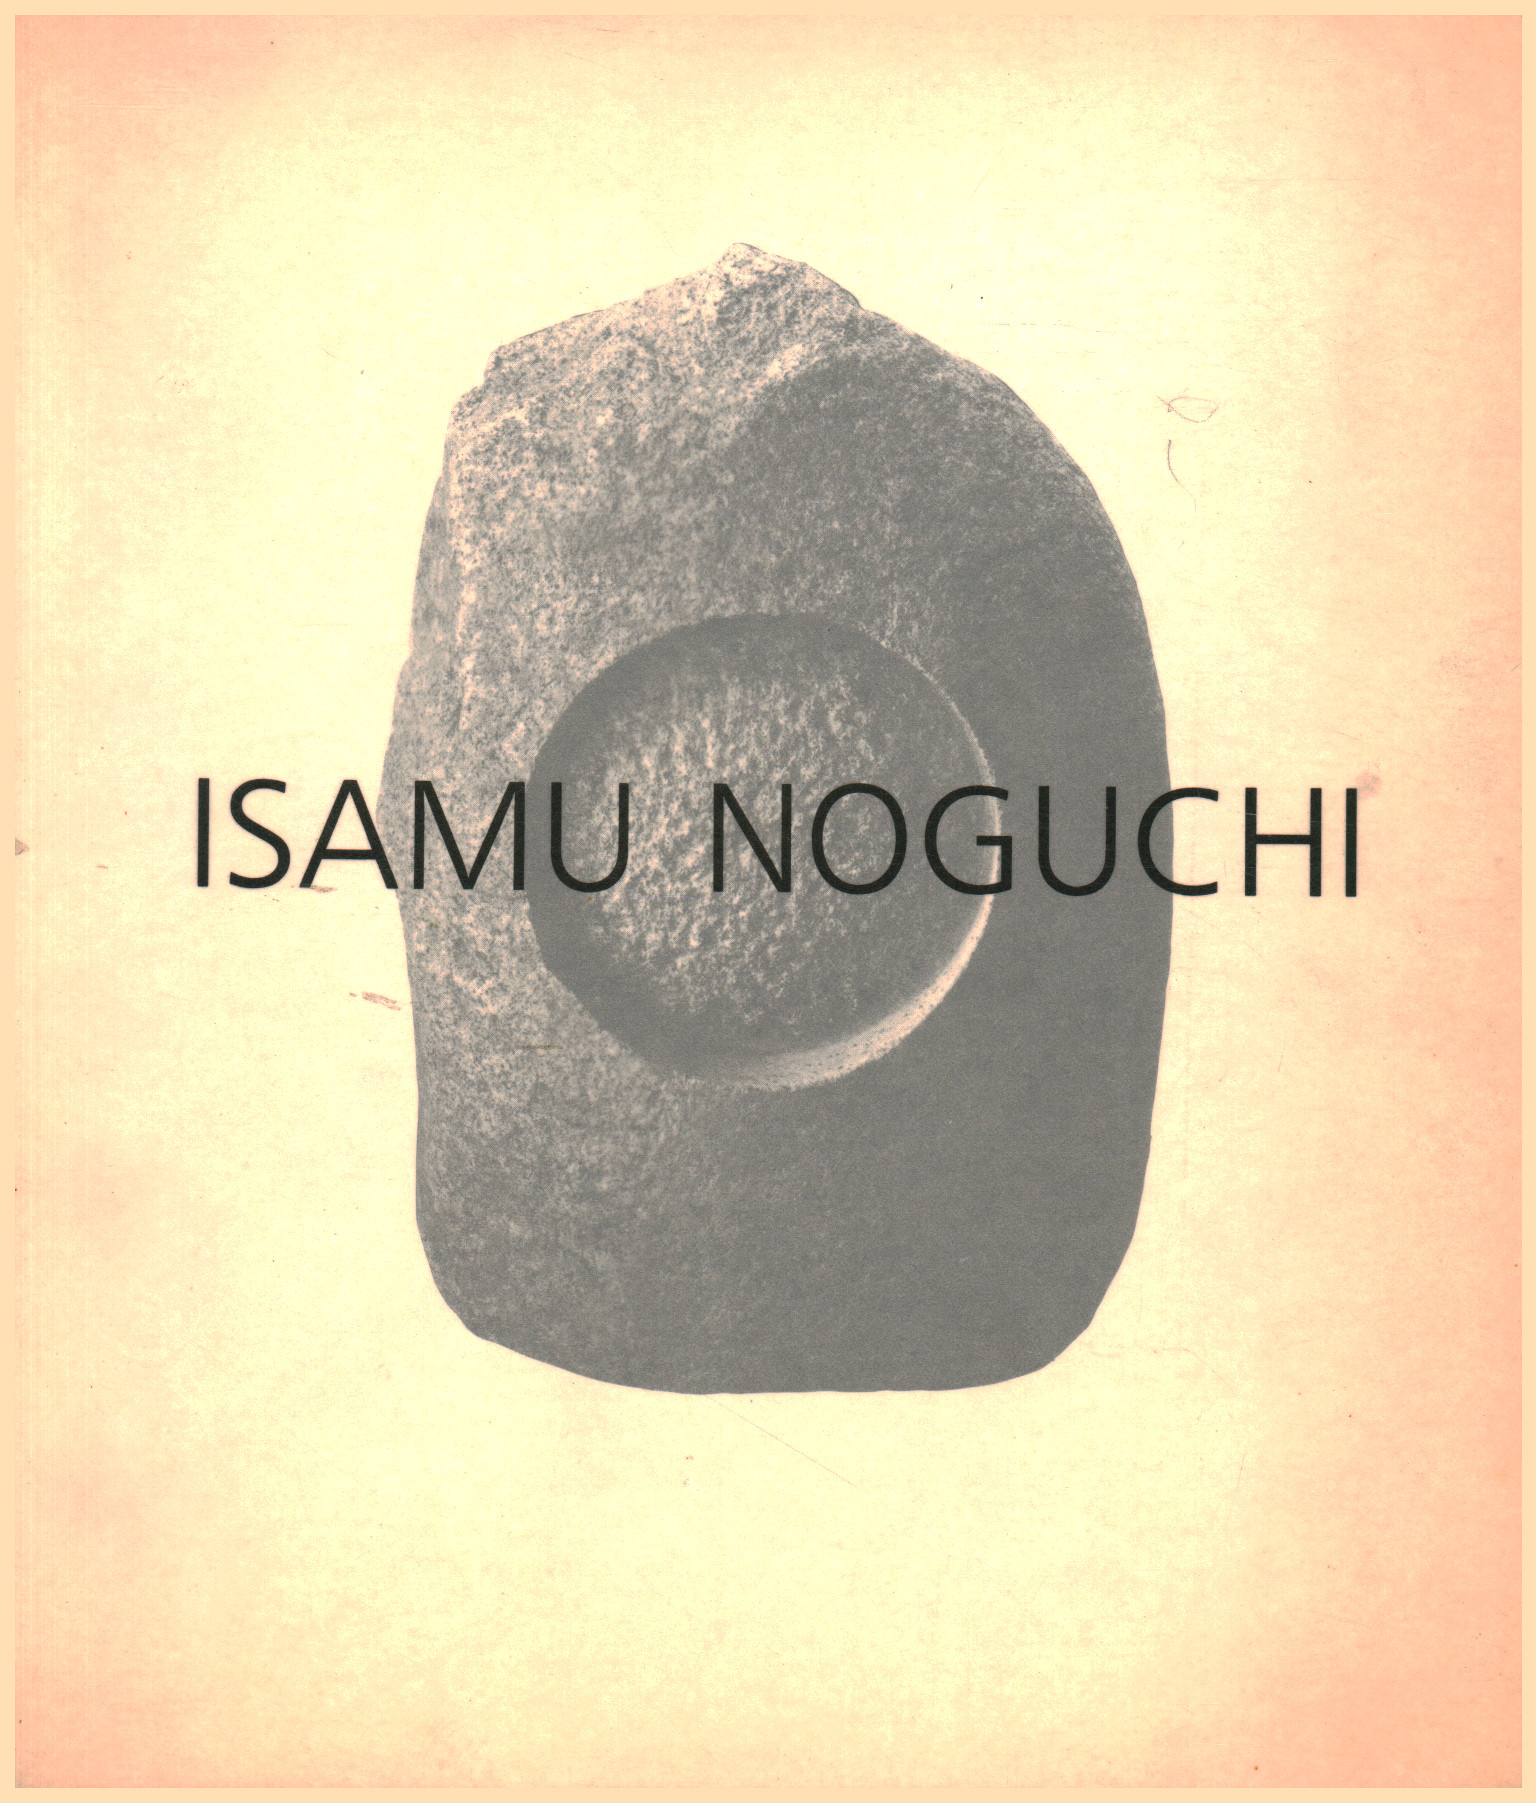 Isamu Noguchi - ¿Qué es la escultura? / ¿Qué es, [Isamu Noguchi]